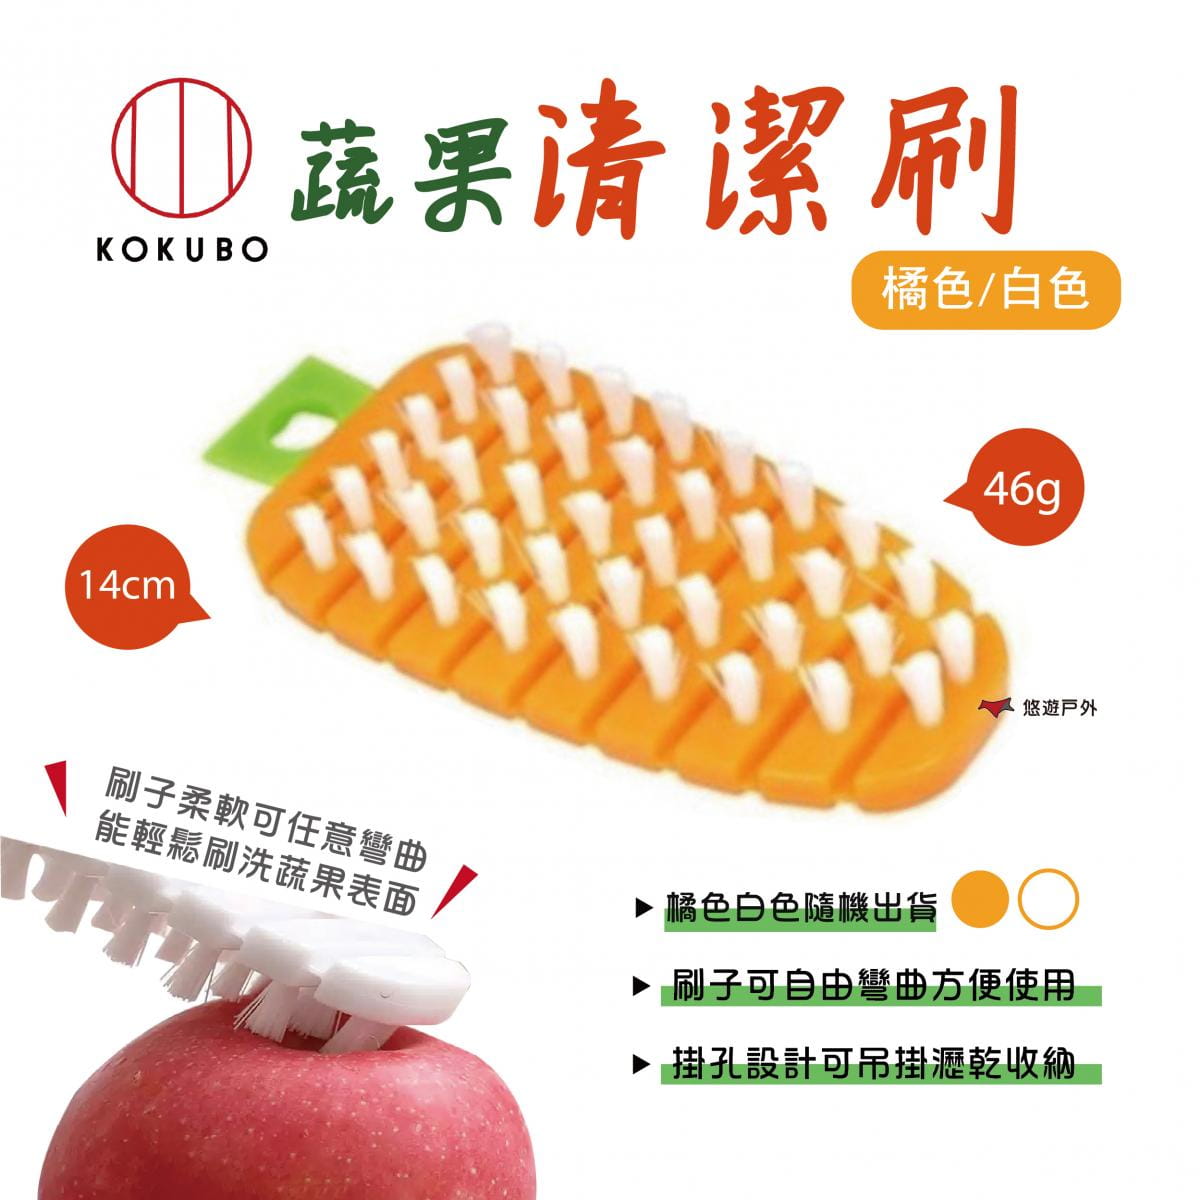 【KOKUBO】小久保蔬果清潔刷 蘿蔔刷 (悠遊戶外) 0